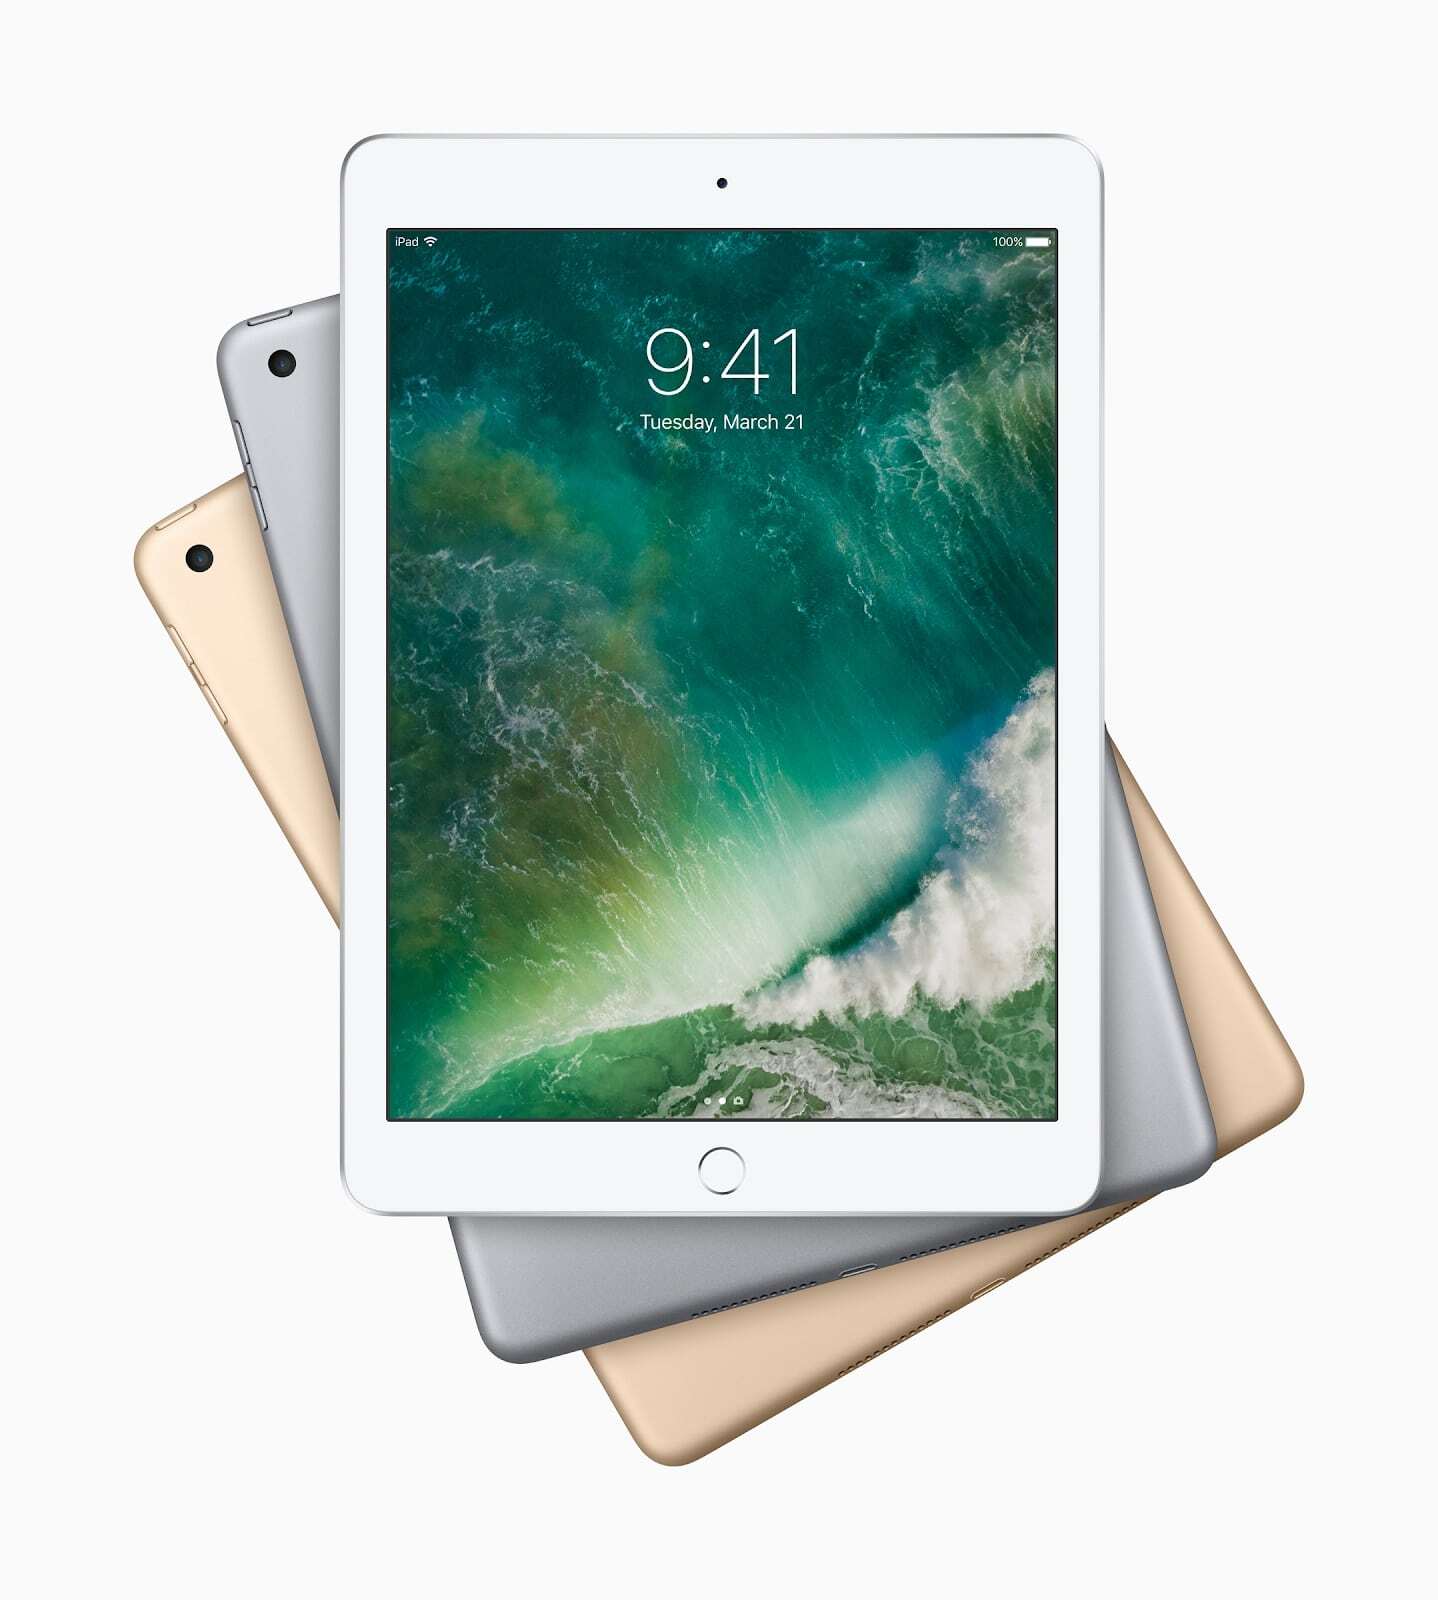 iPad 2017 sở hữu chip Apple A10X 6 nhân 64-bit có tốc độ xử lý vượt trội